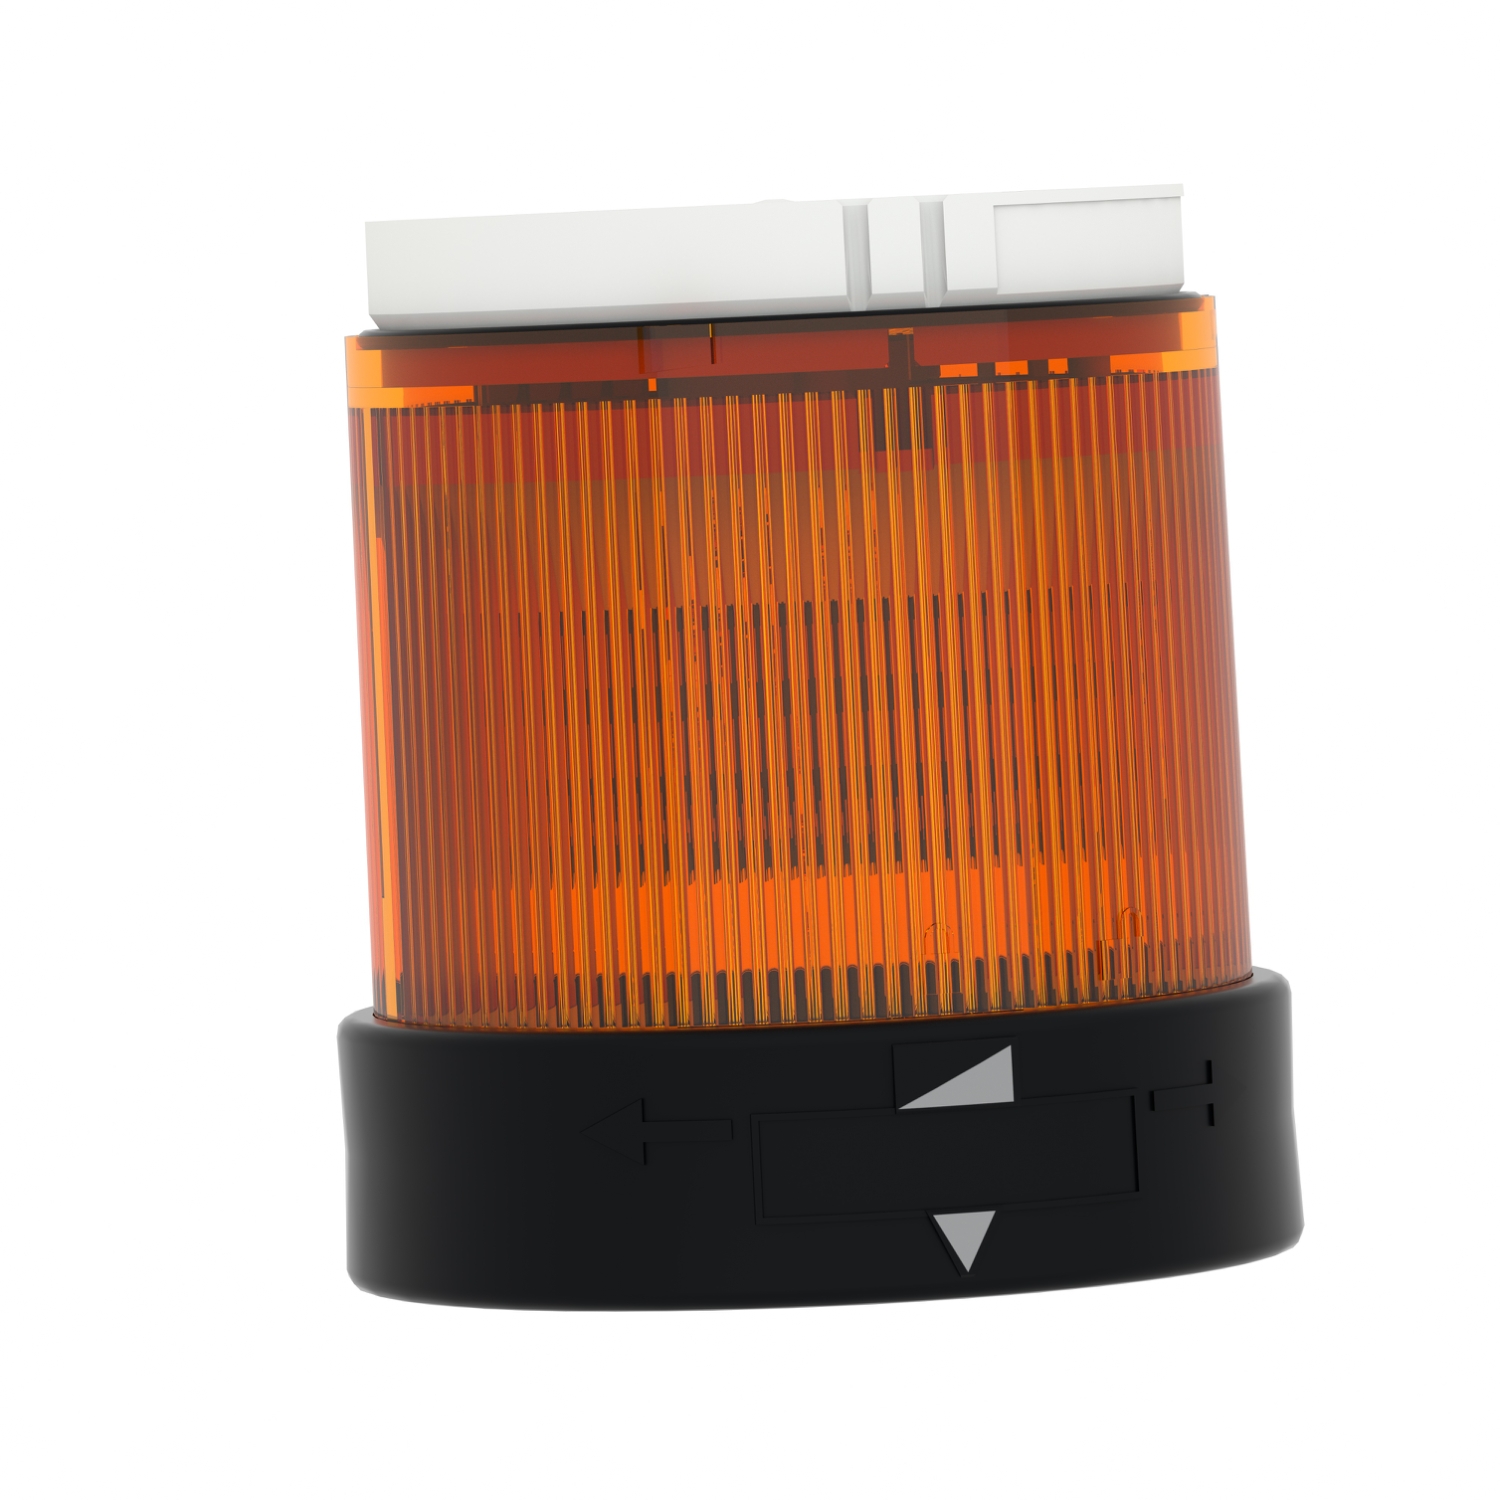 XVUC65: LED-Leuchtelement, orange, Blitzlicht, 24V, für Signalsäule XVU bei  reichelt elektronik